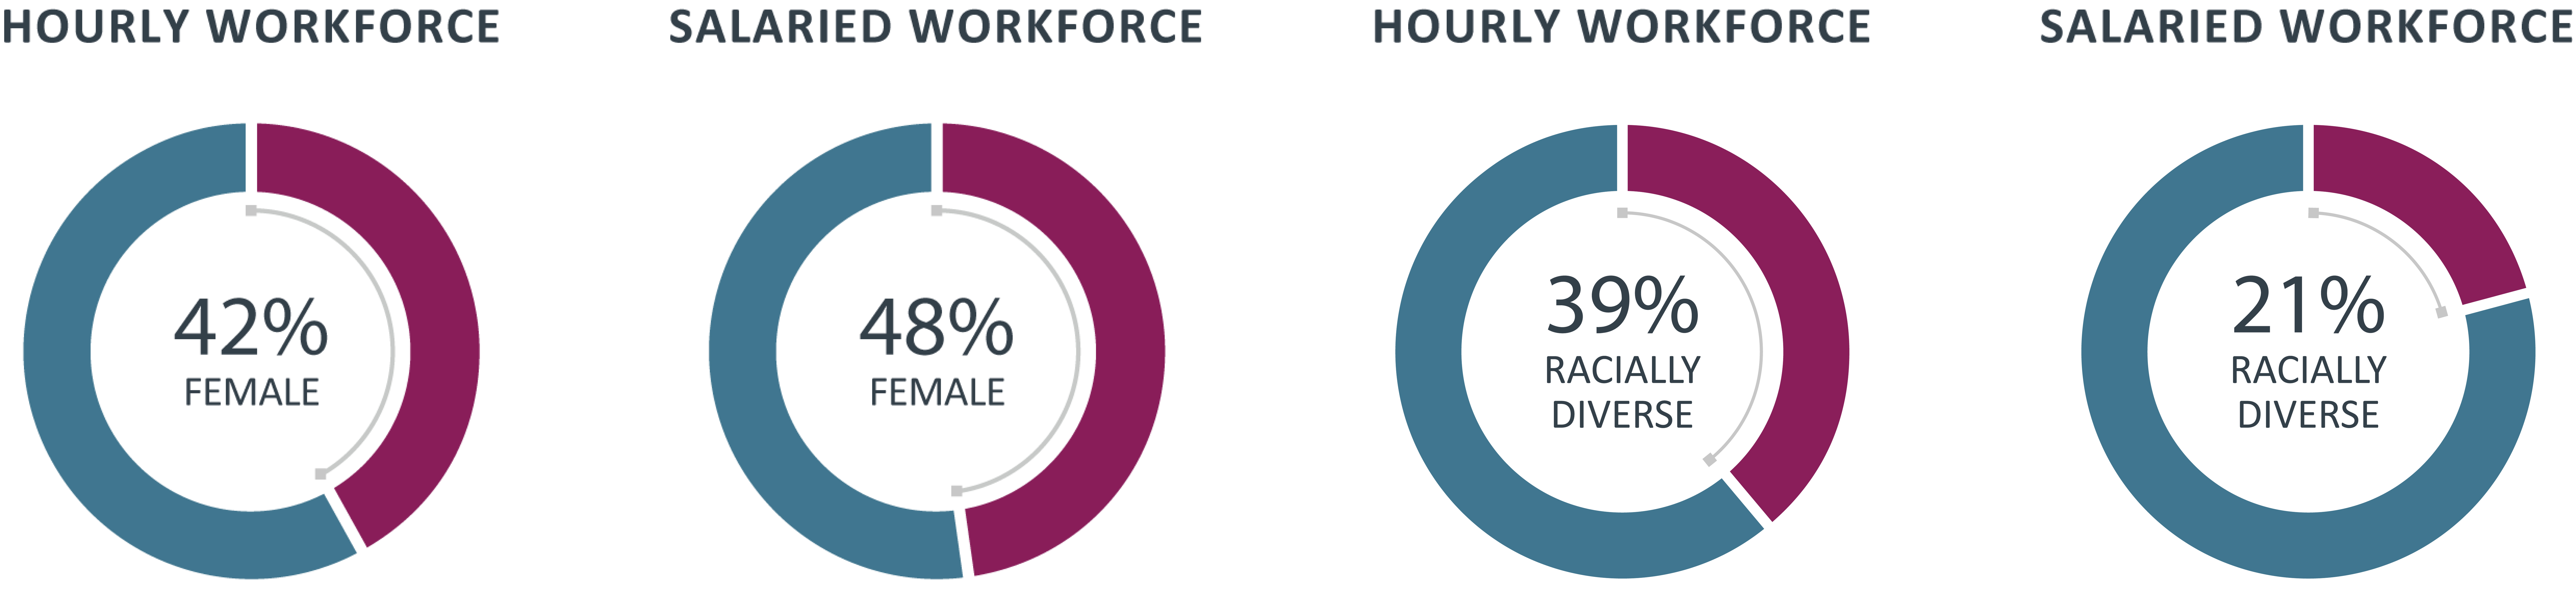 updated-charts workforce diversity.jpg